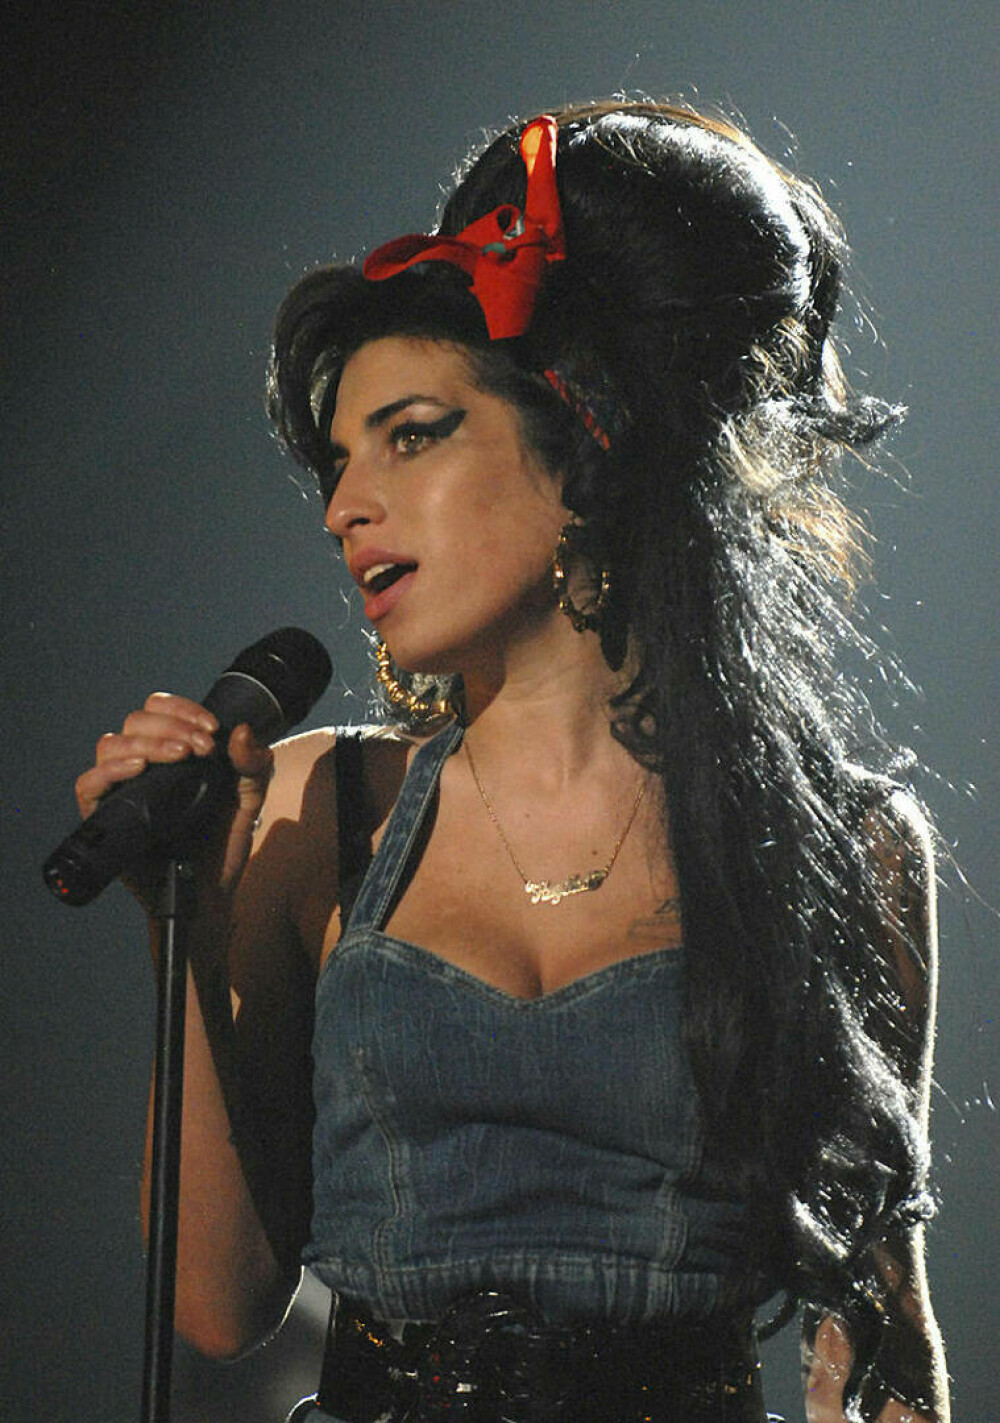 Imagini de colecție cu Amy Winehouse. Cântăreața ar fi împlinit astăzi 40 de ani | FOTO - Imaginea 18